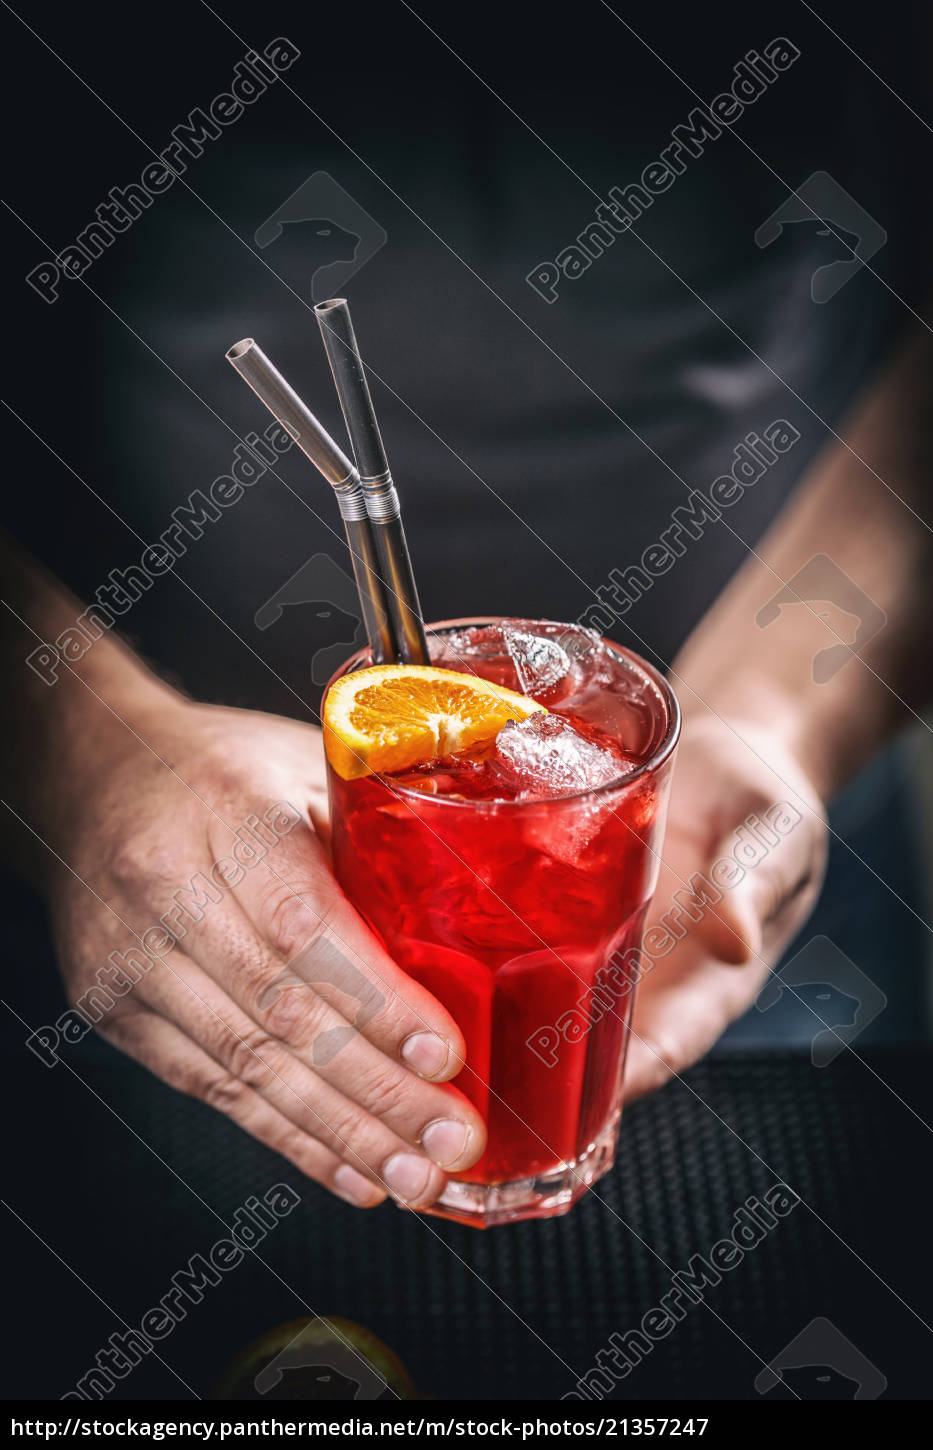 Roter alkoholfreier Cocktail - Lizenzfreies Bild #21357247 ...